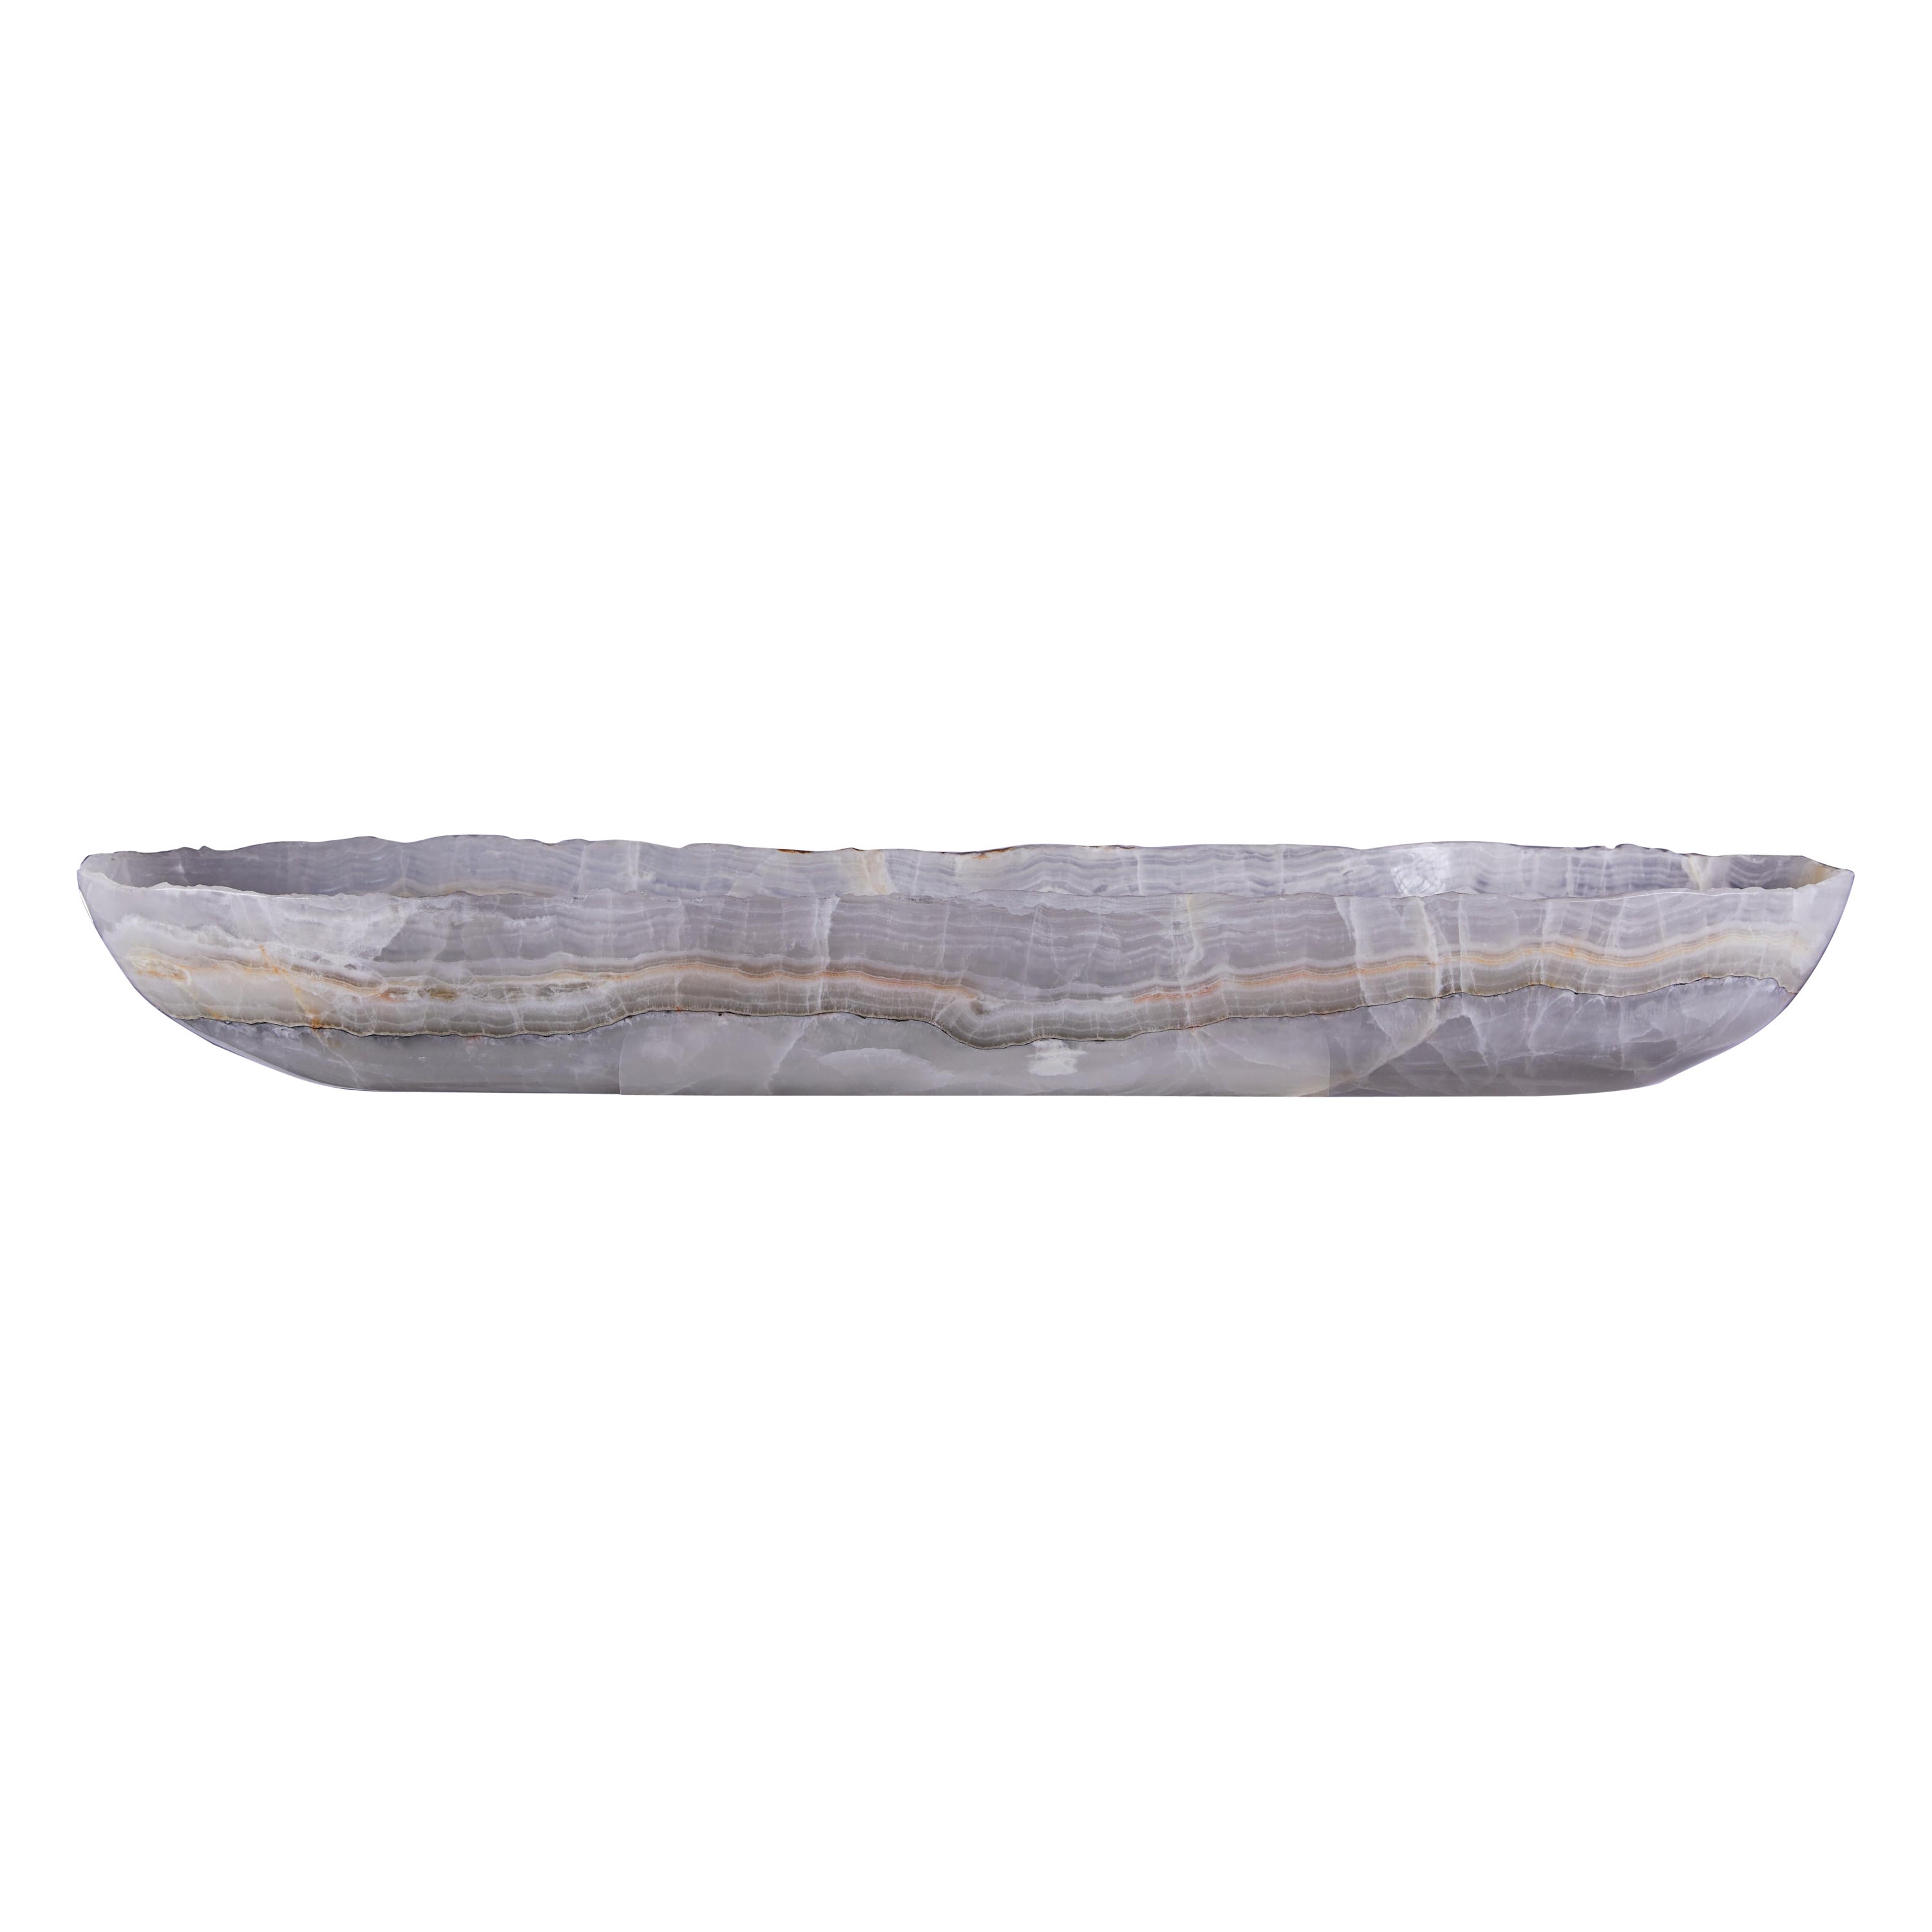 Large onyx canoe bowl with striking banding